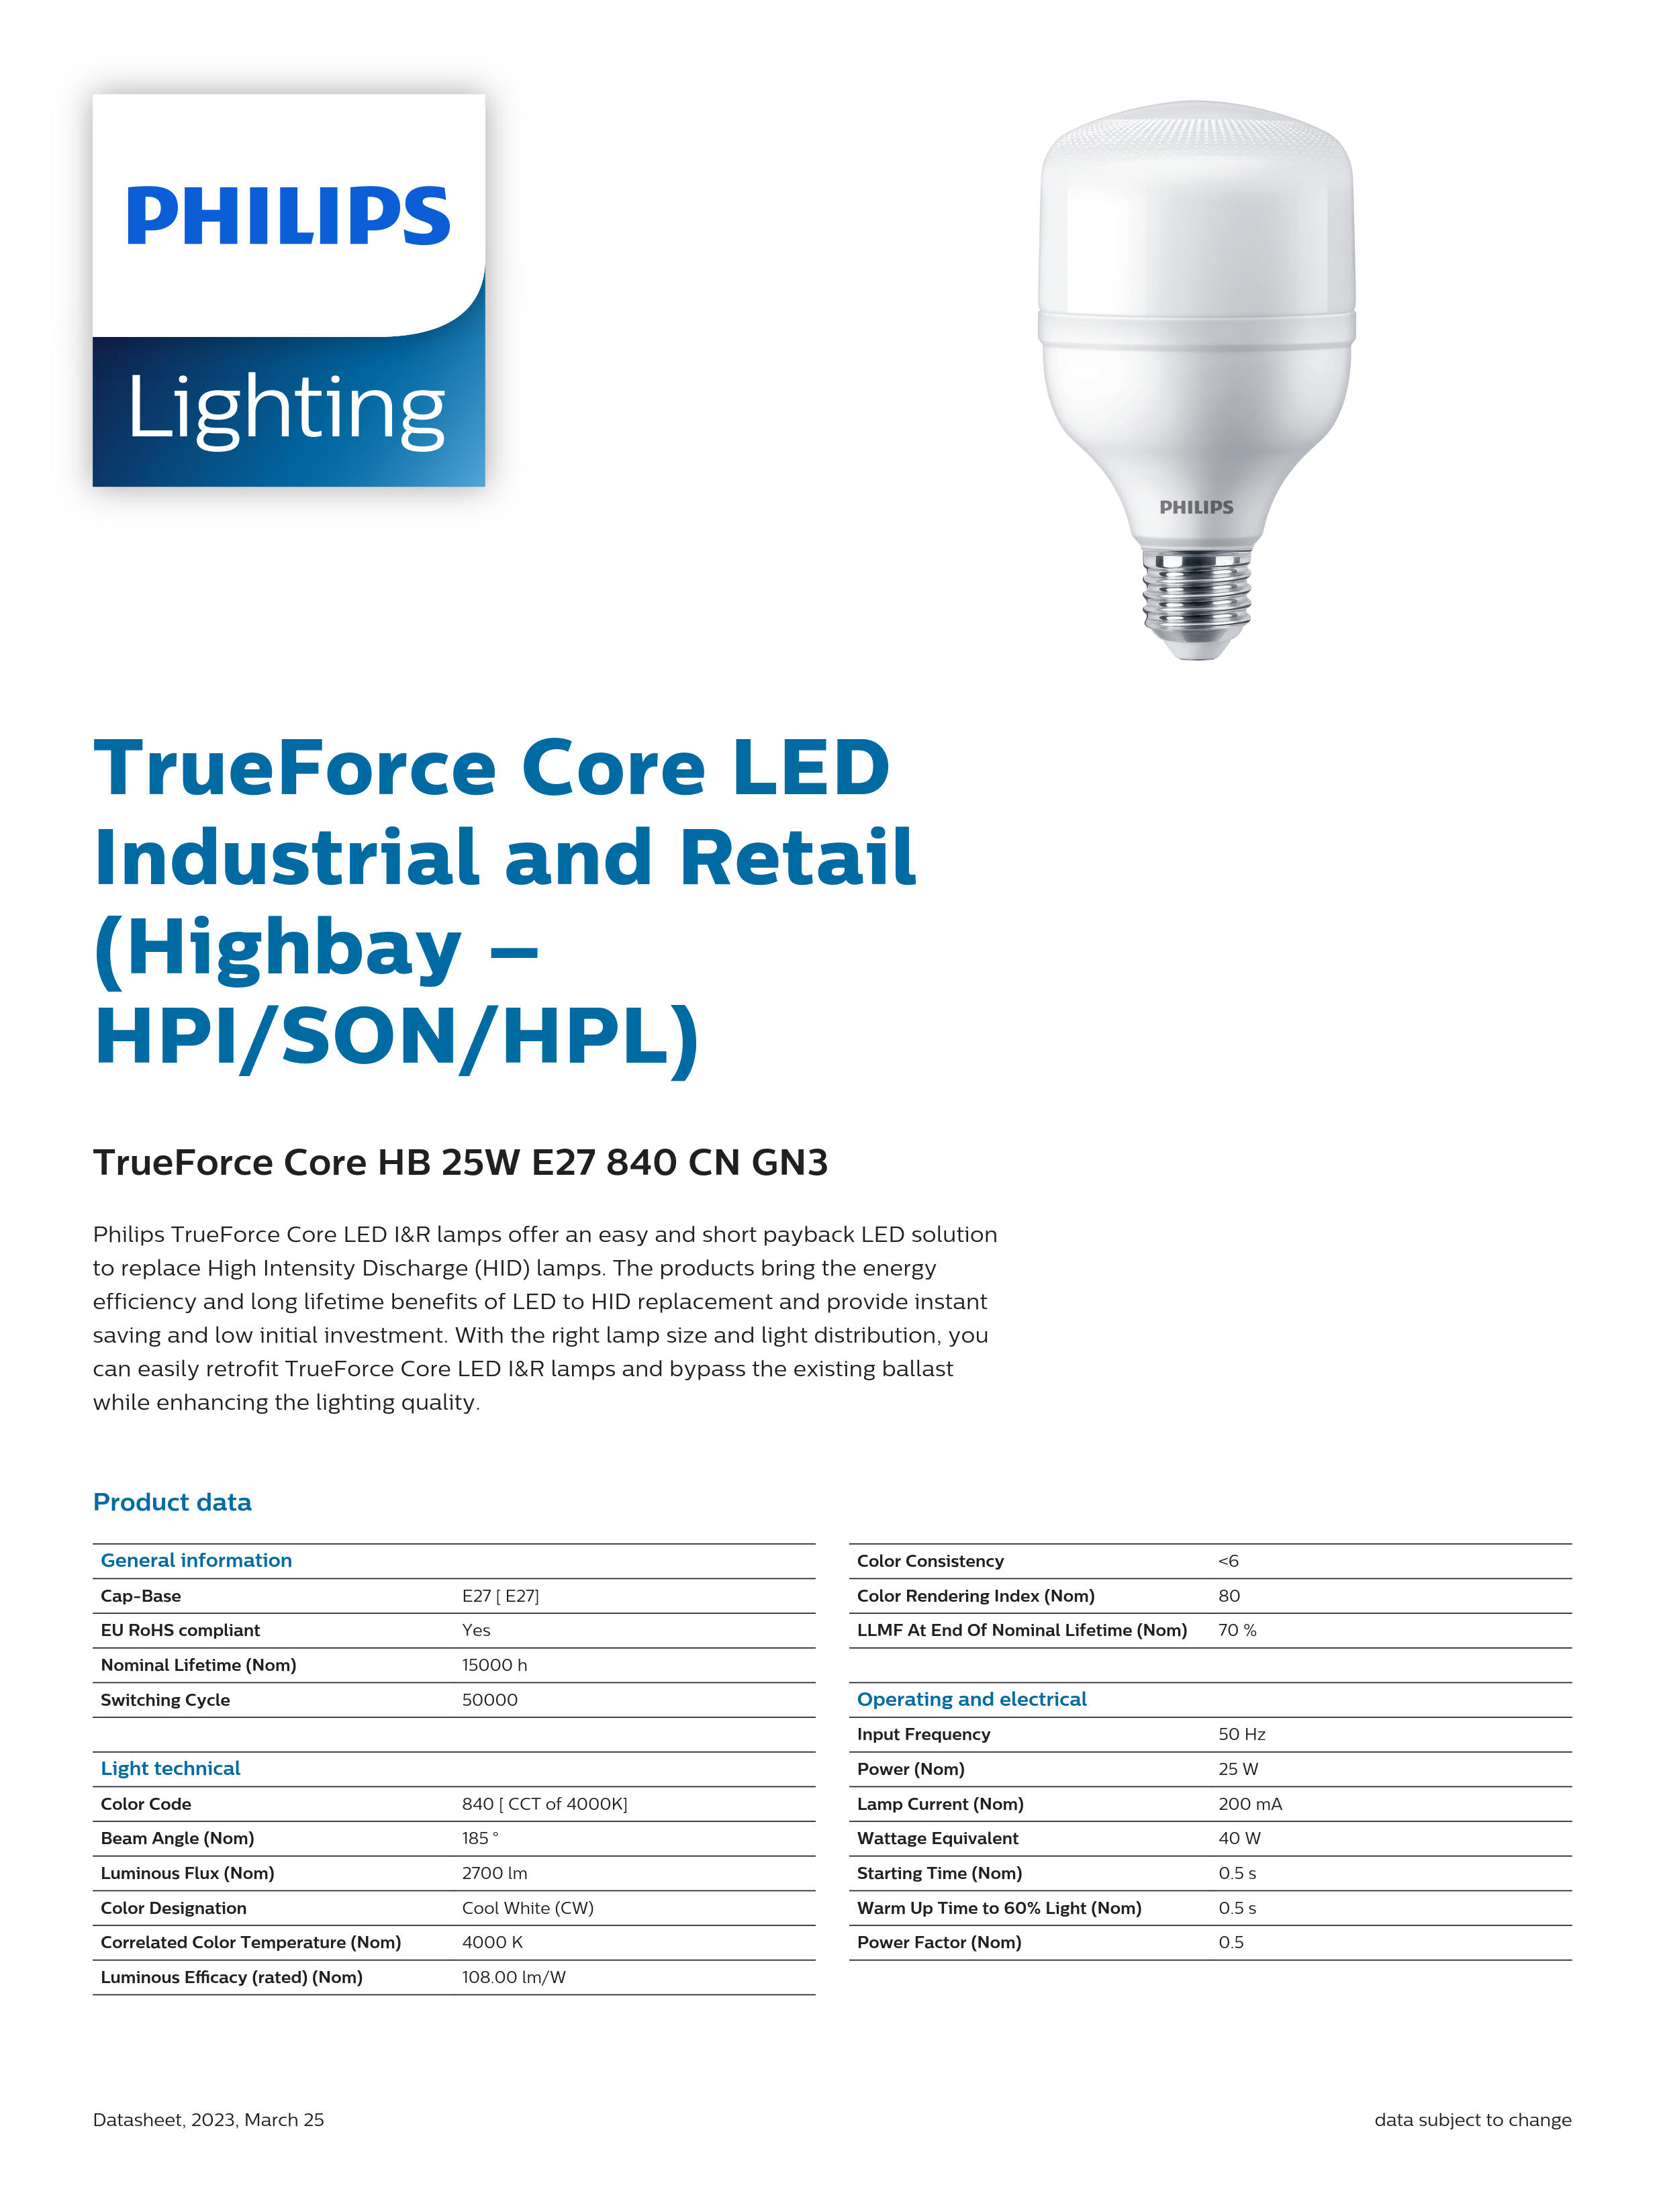 PHILIPS LED Bulb TrueForce Core HB 25W E27 840 CN GN3 929002410510